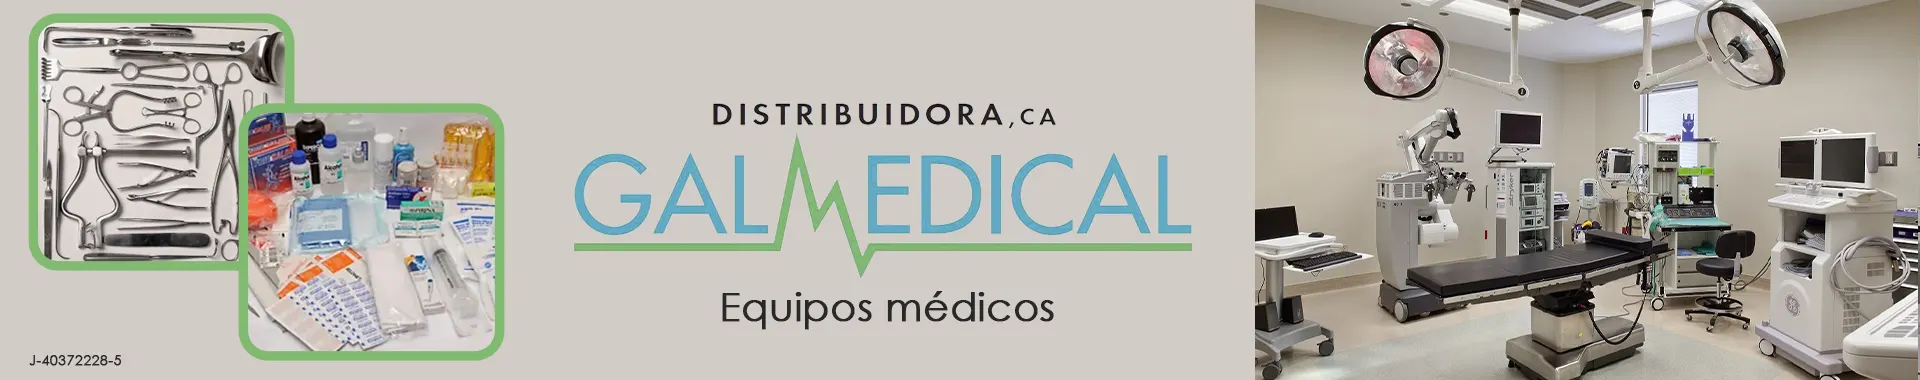 Imagen 1 del perfil de Distribuidora Galmedical